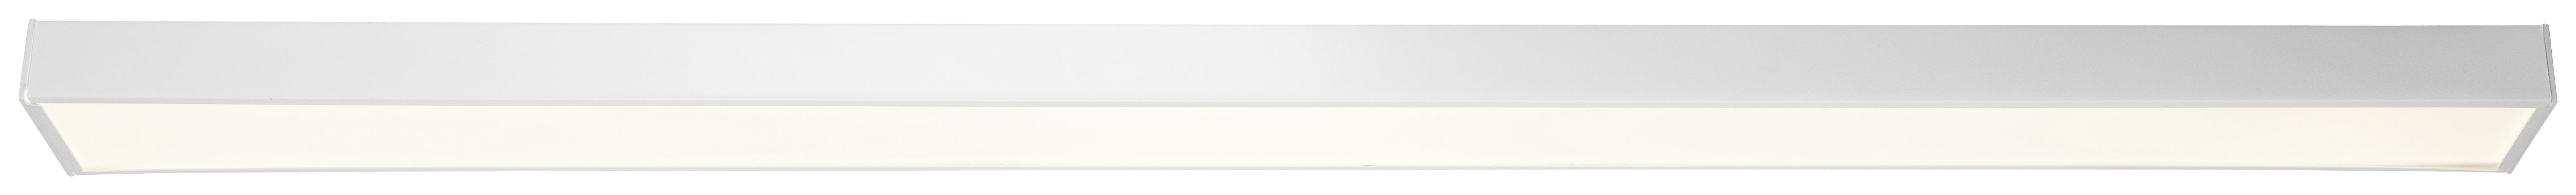 Stropní Led Svítidlo Danila, Včet. Led 36w - bílá, Moderní, kov/plast (118/10/4cm) - Modern Living